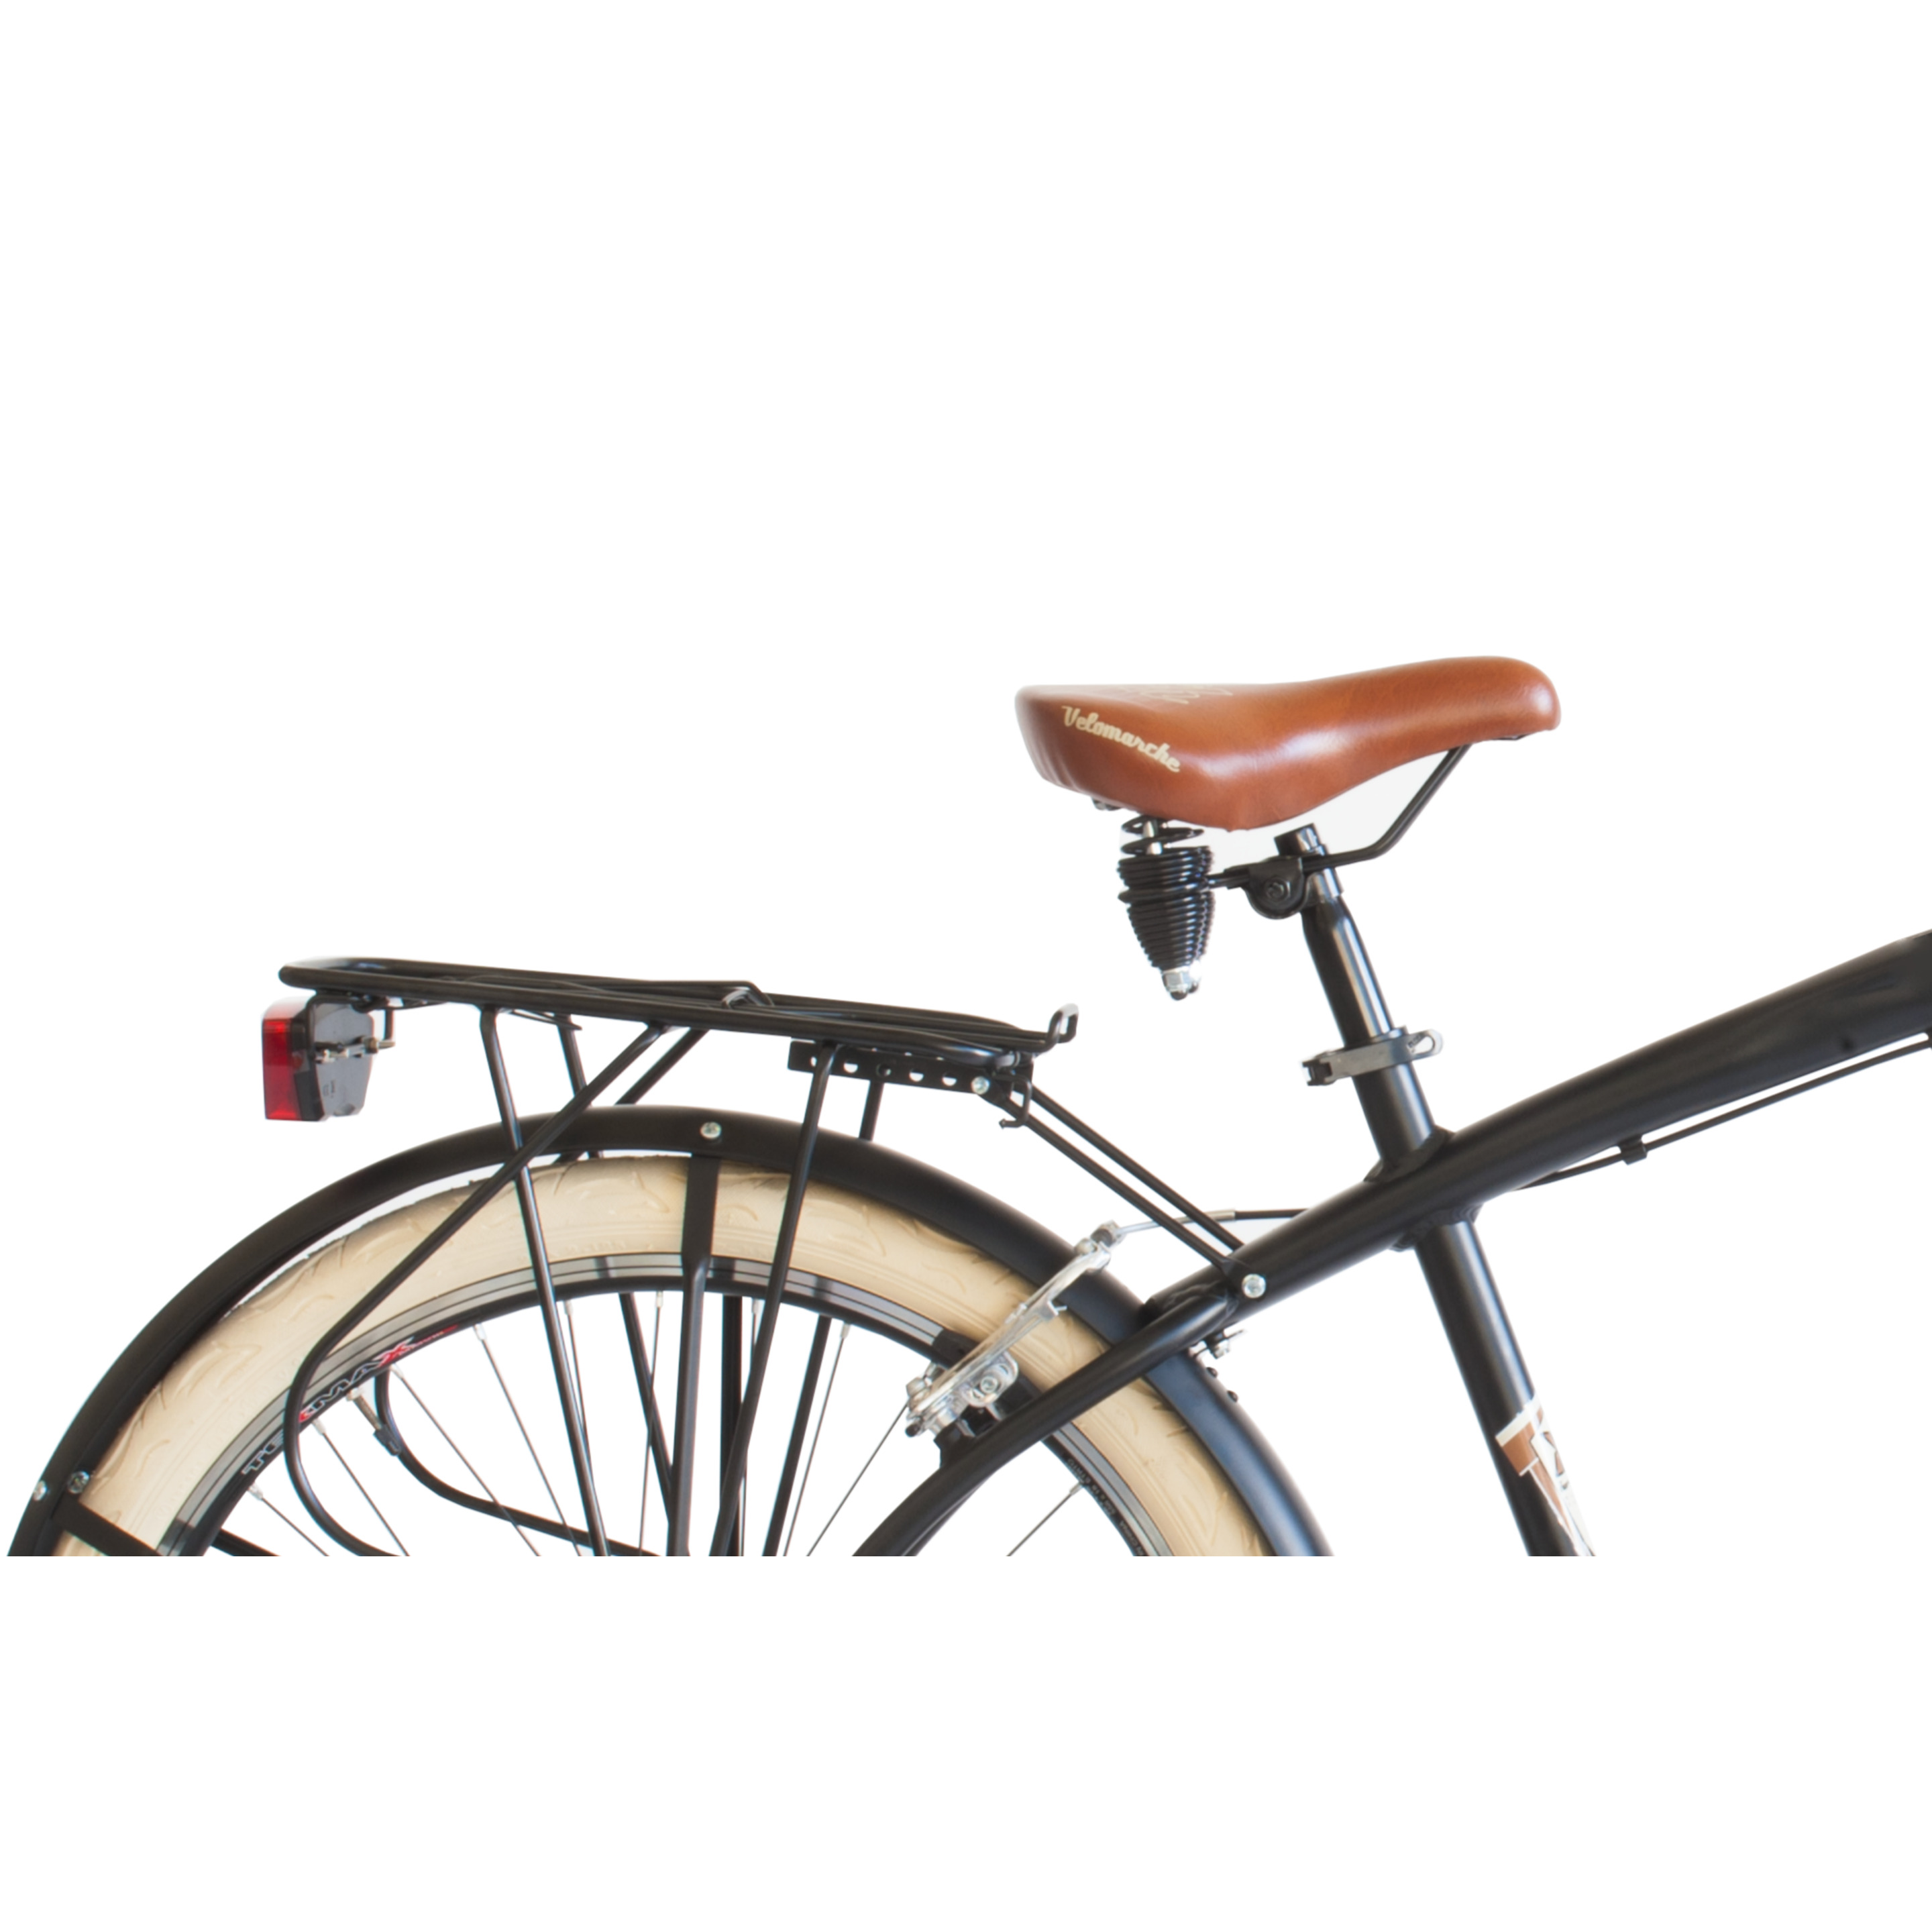 Bicicleta De Ciudad  Airbici 790m Cruiser - Negro - Vintage, paseo, ciudad, cruiser  MKP